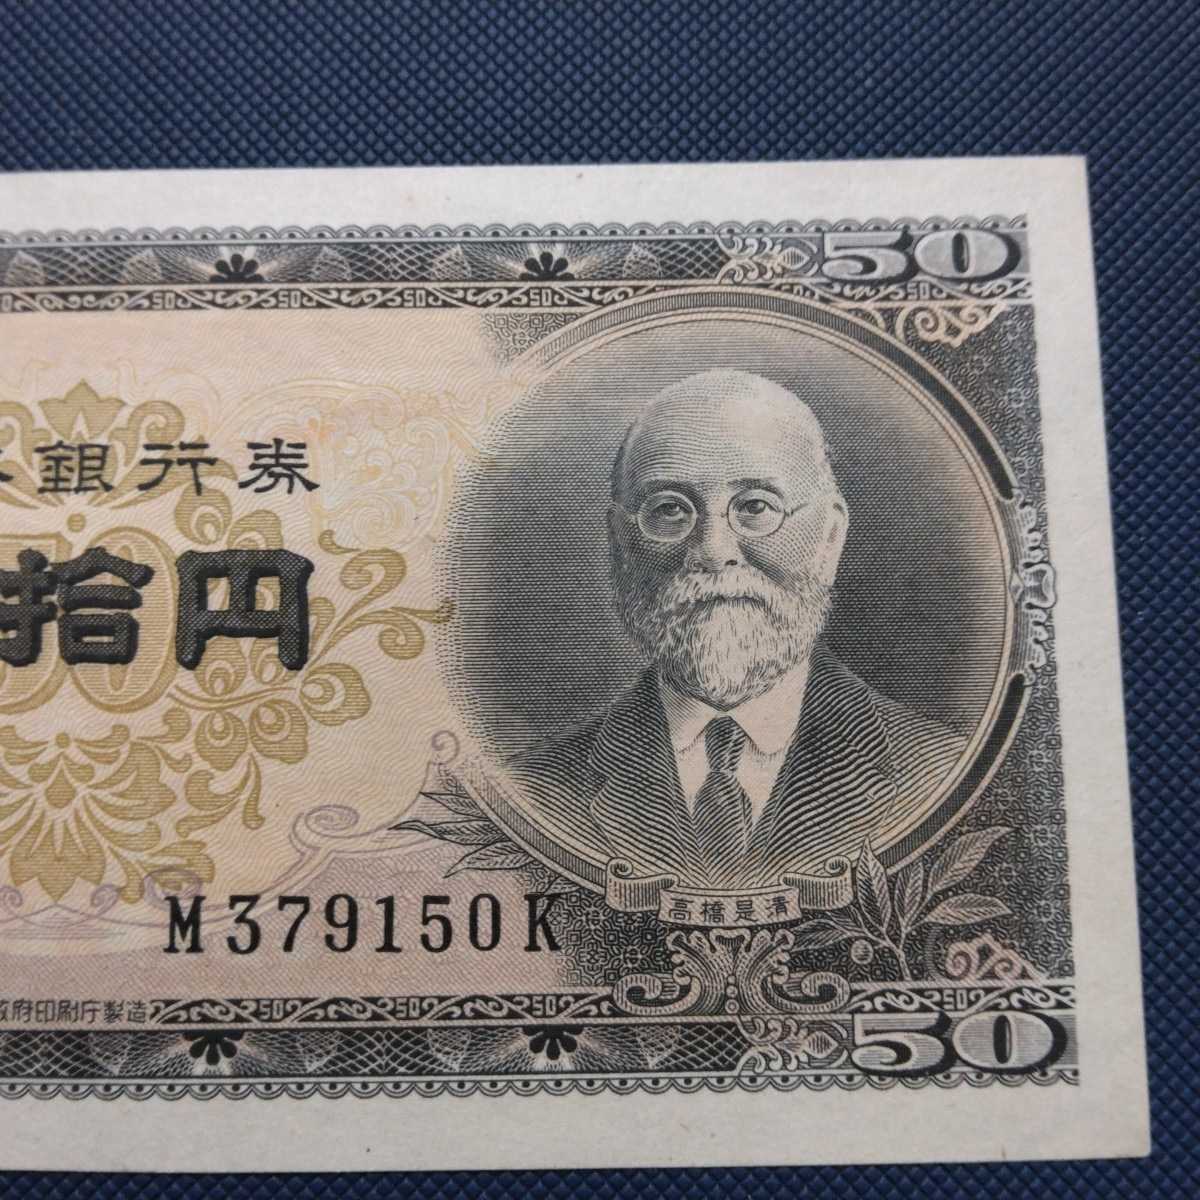 古札セット 古銭1027番 昭和レトロ 紙モノ 古紙幣 債券 昔の紙幣